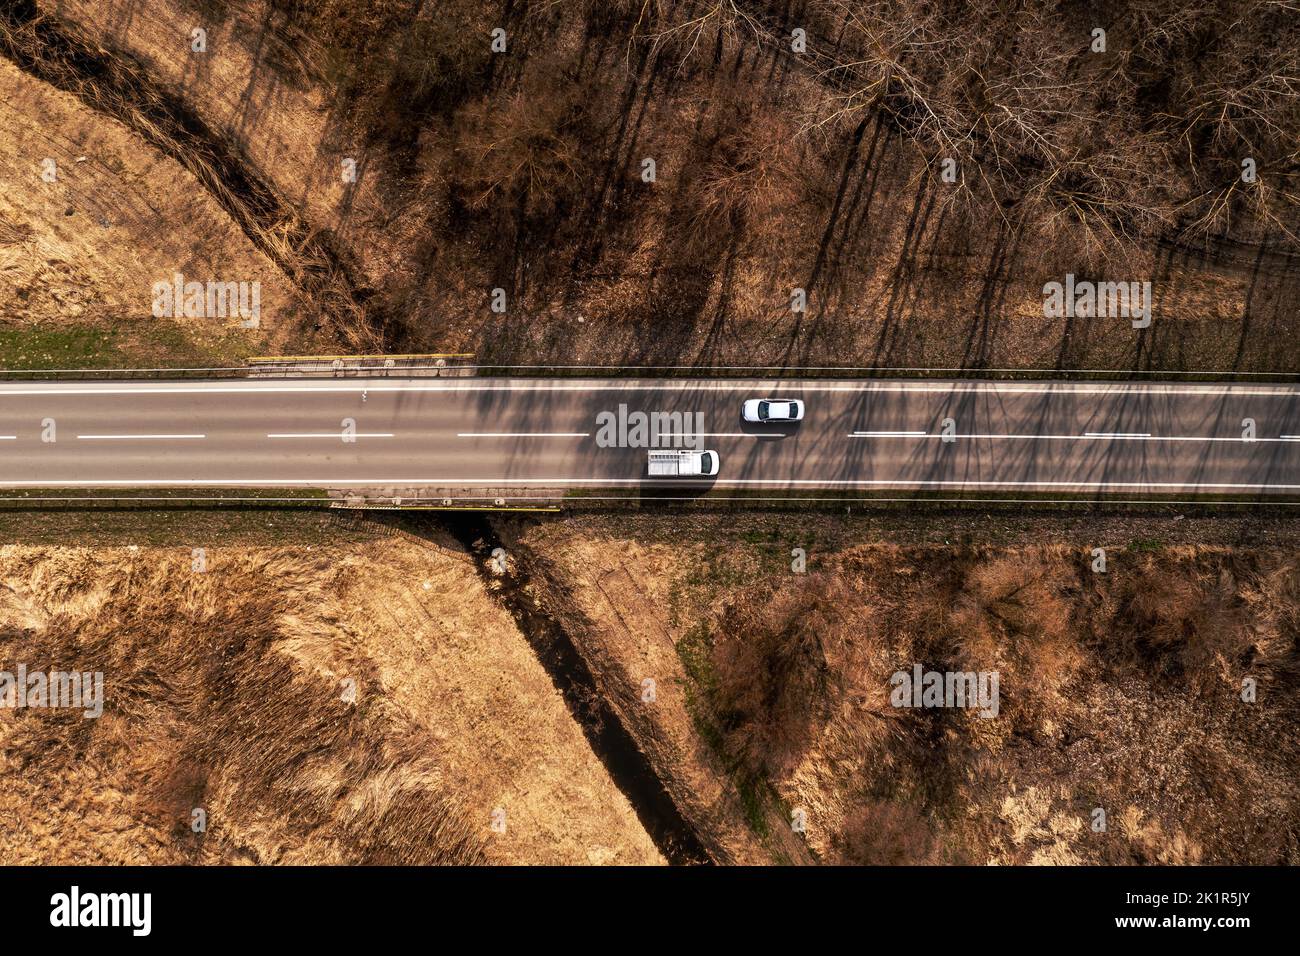 Vue aérienne de dessus de voiture et de camion sur l'autoroute à travers le paysage d'automne, drone pov directement au-dessus Banque D'Images